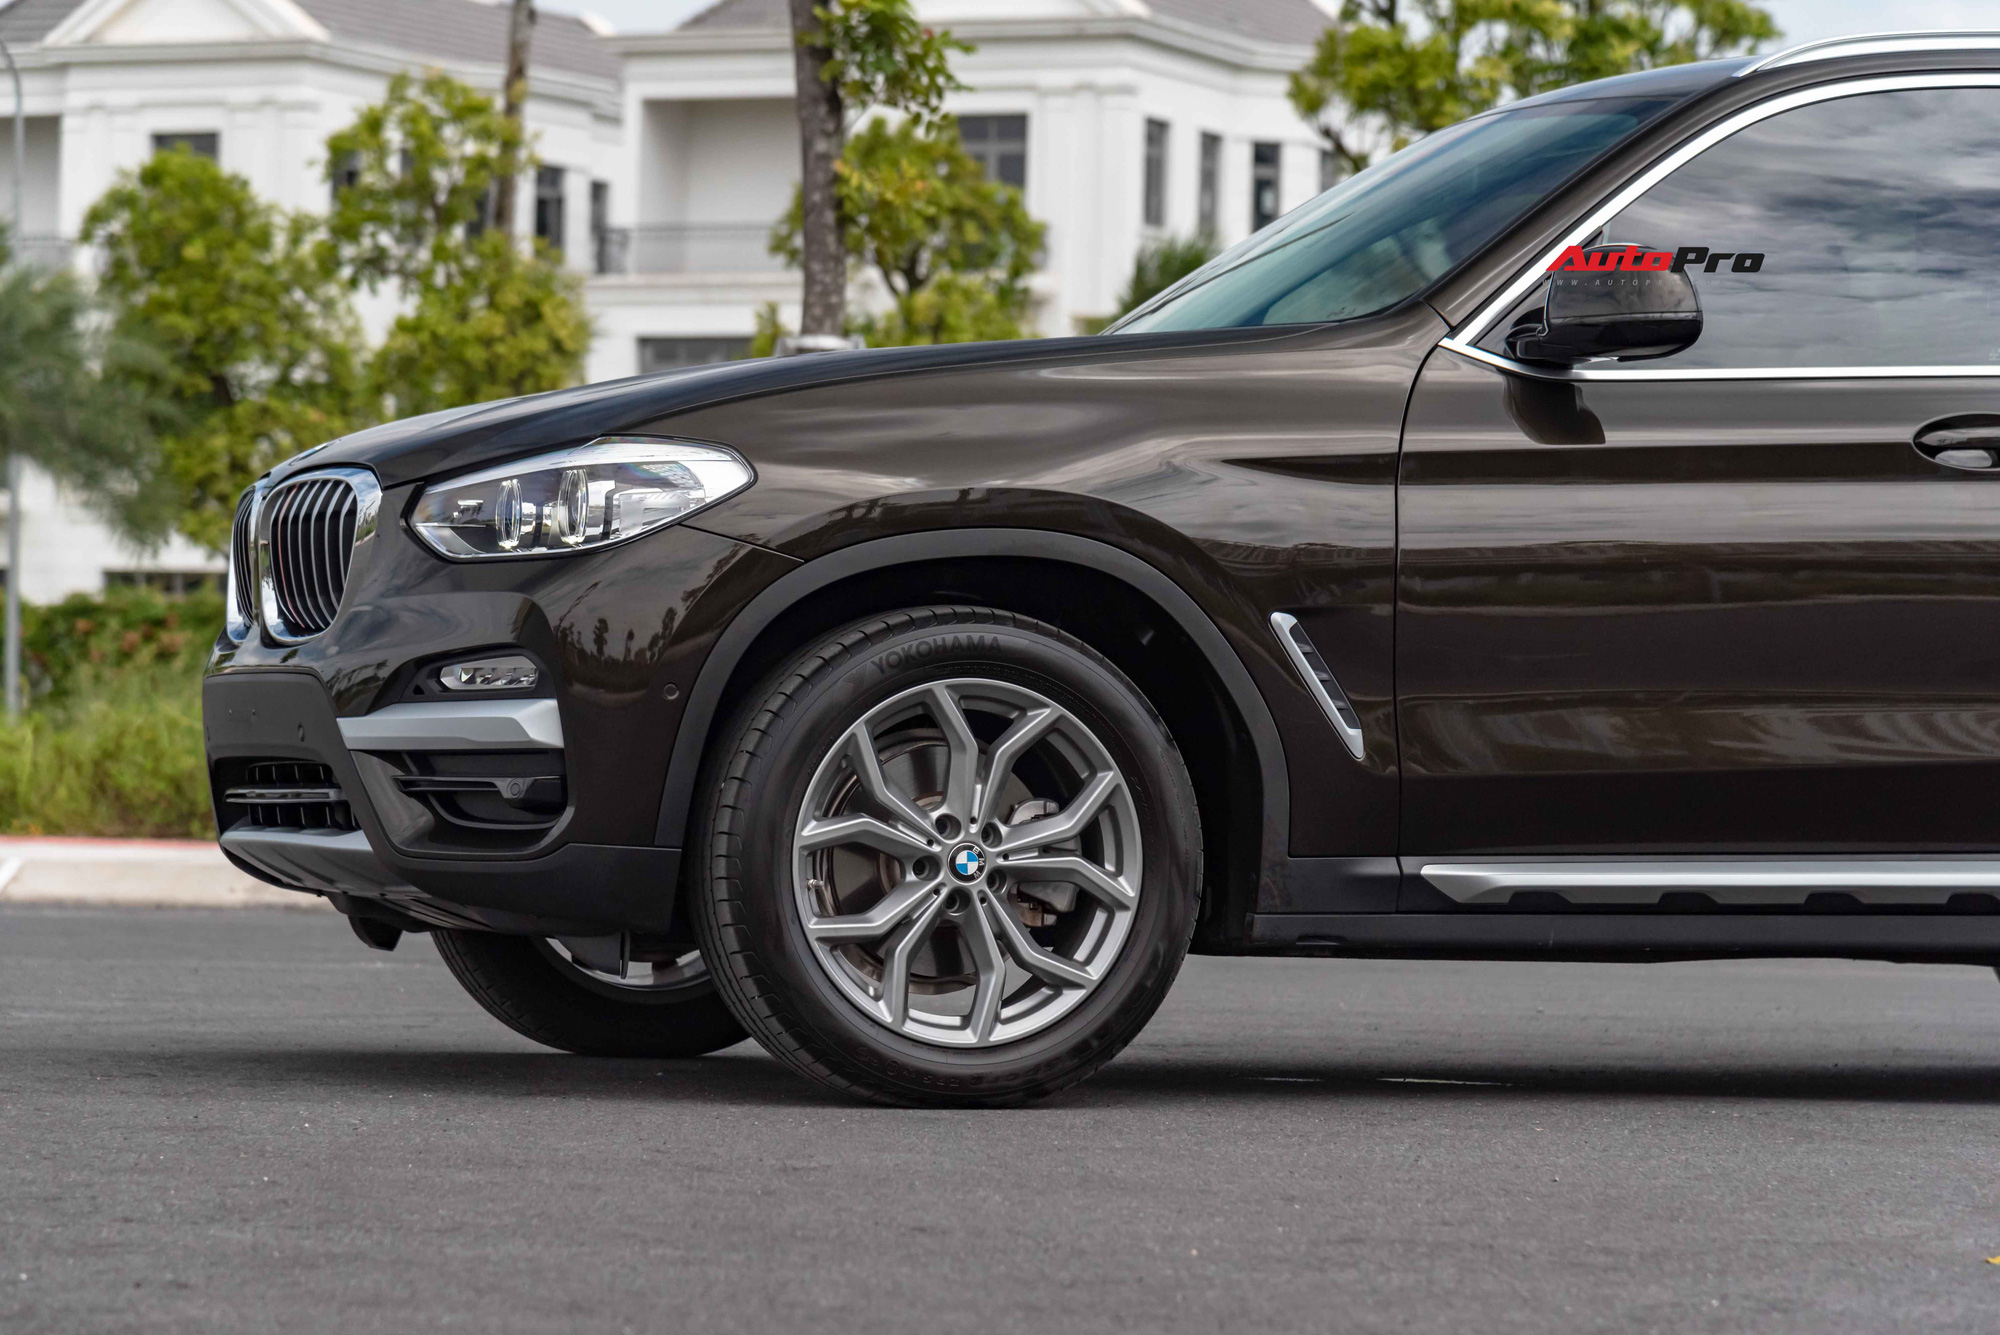 Chủ xe BMW X3 quyết định chia tay chỉ sau 12.000km, giá bán lại gần bằng tiền mua xe mới tại đại lý - Ảnh 2.